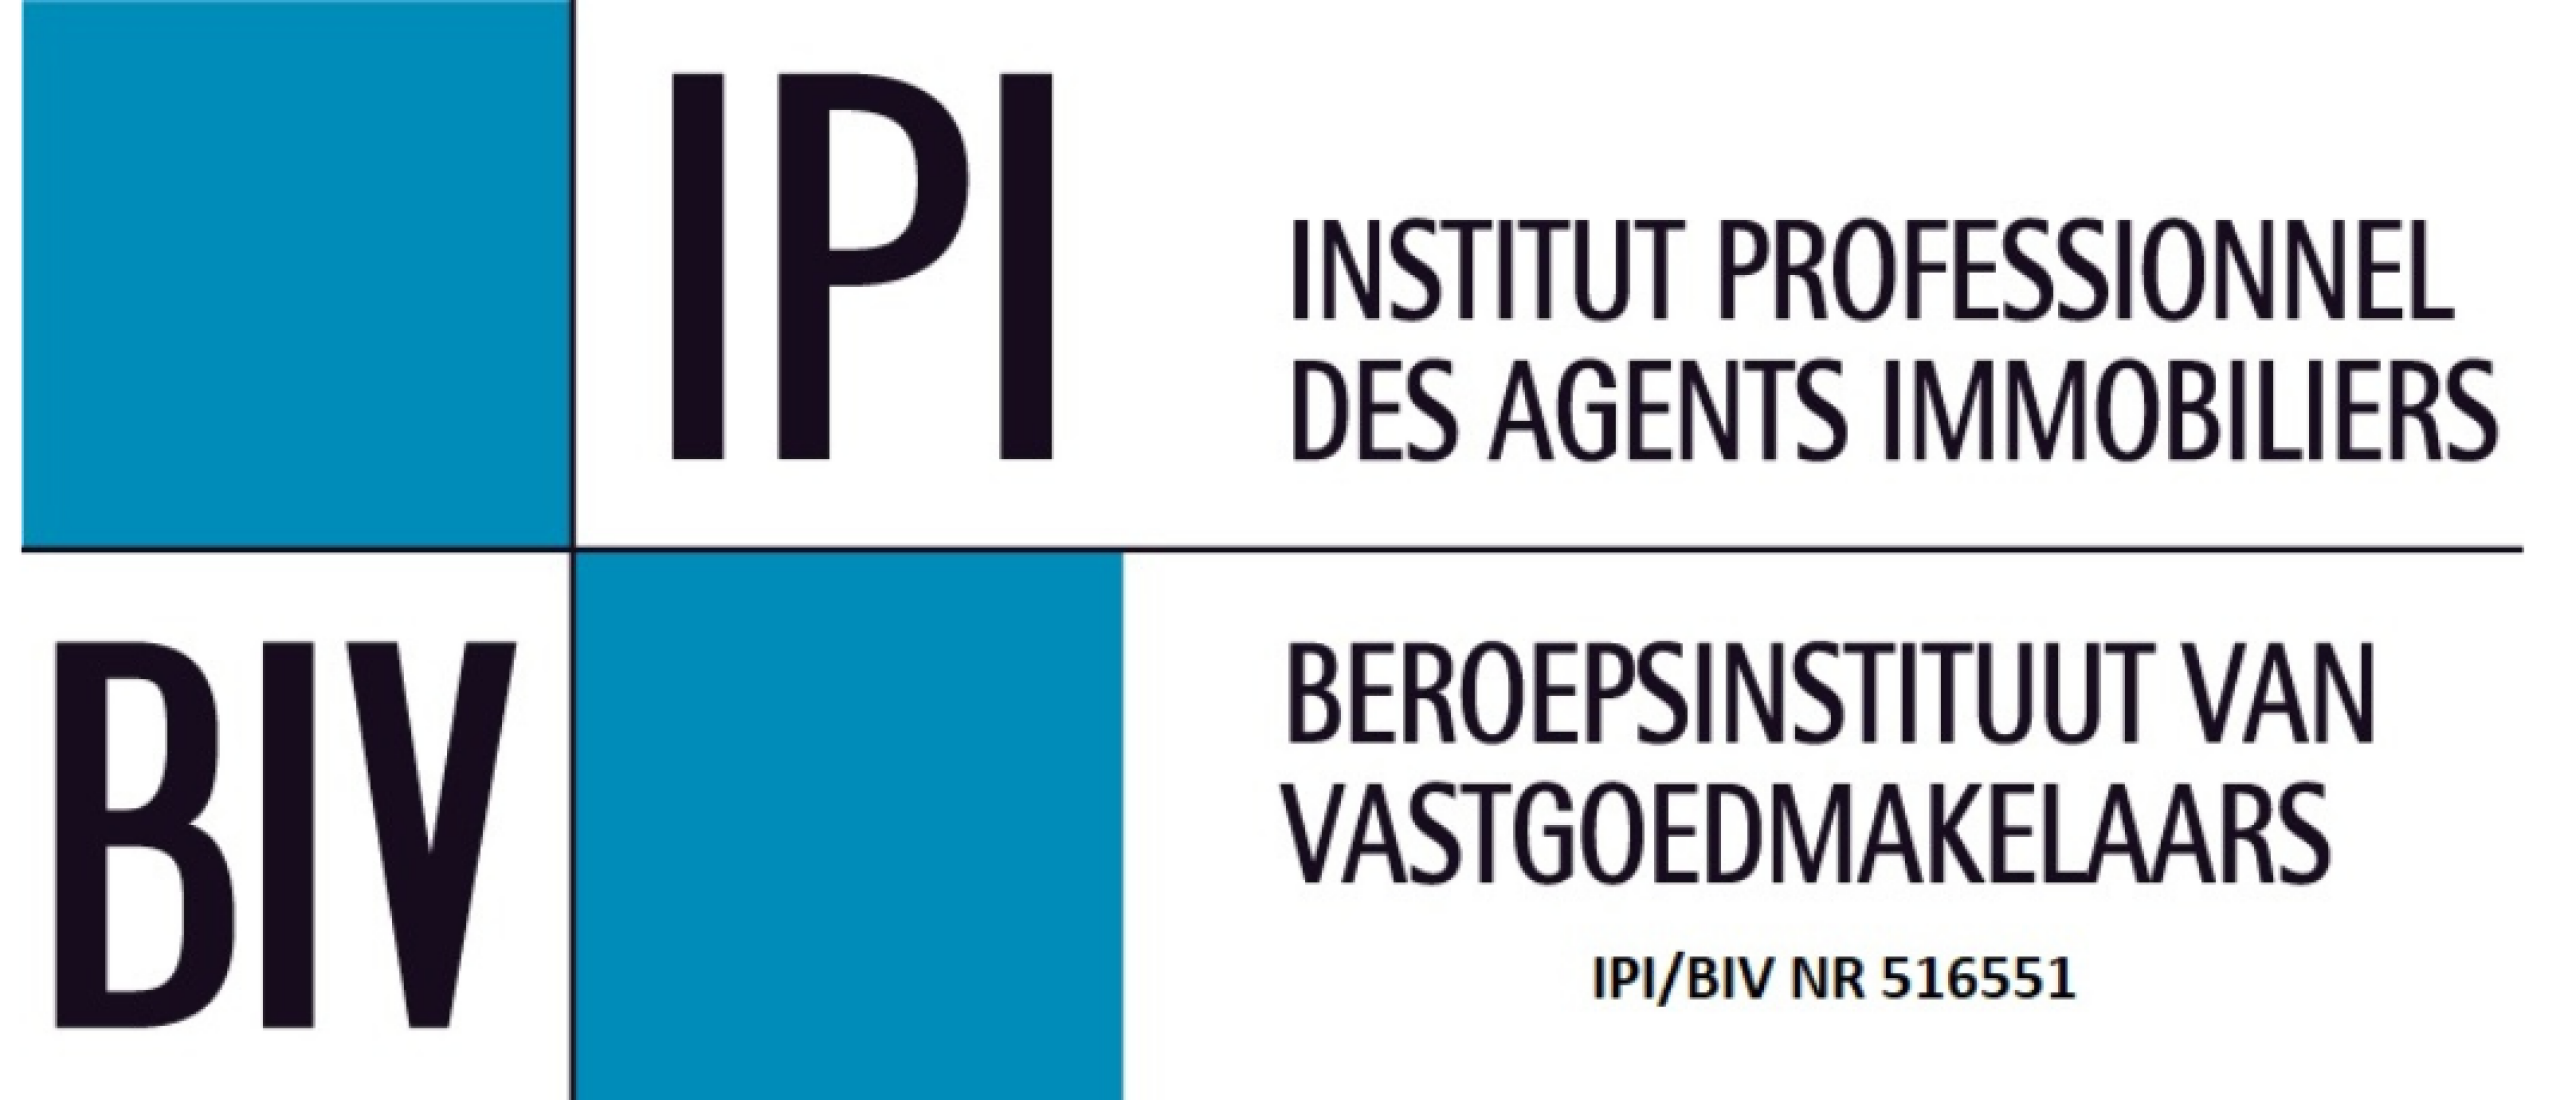 Wat is het BIV / IPI ?